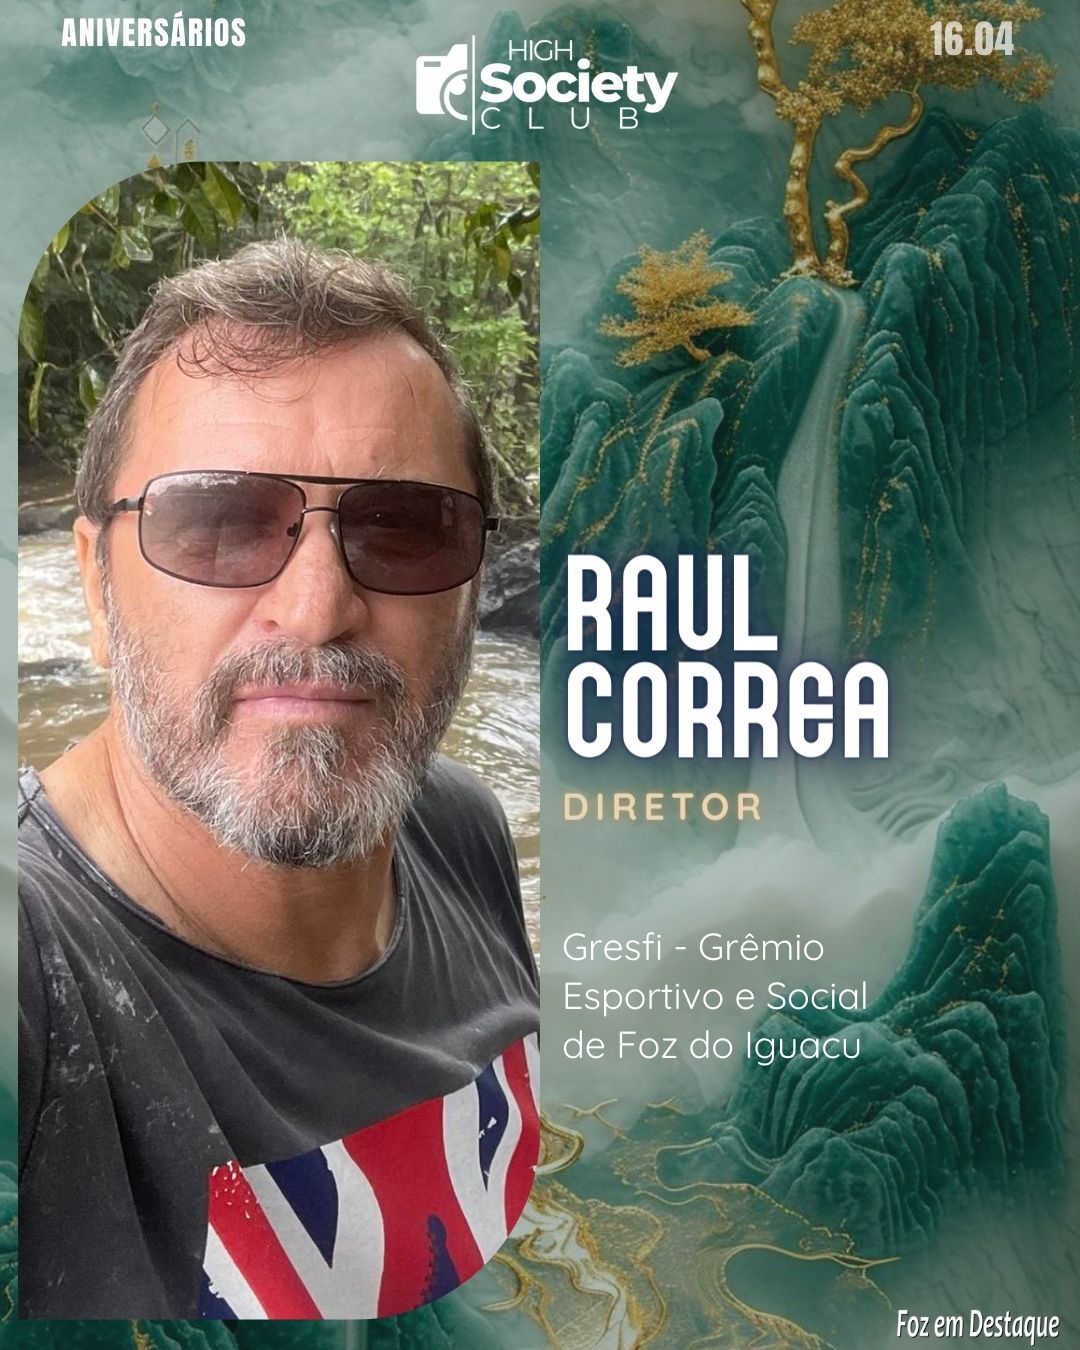 Raul Correa - Diretor Gresfi - Grêmio Esportivo e Social de Foz do Iguacu - High Society Club Foz em Destaque